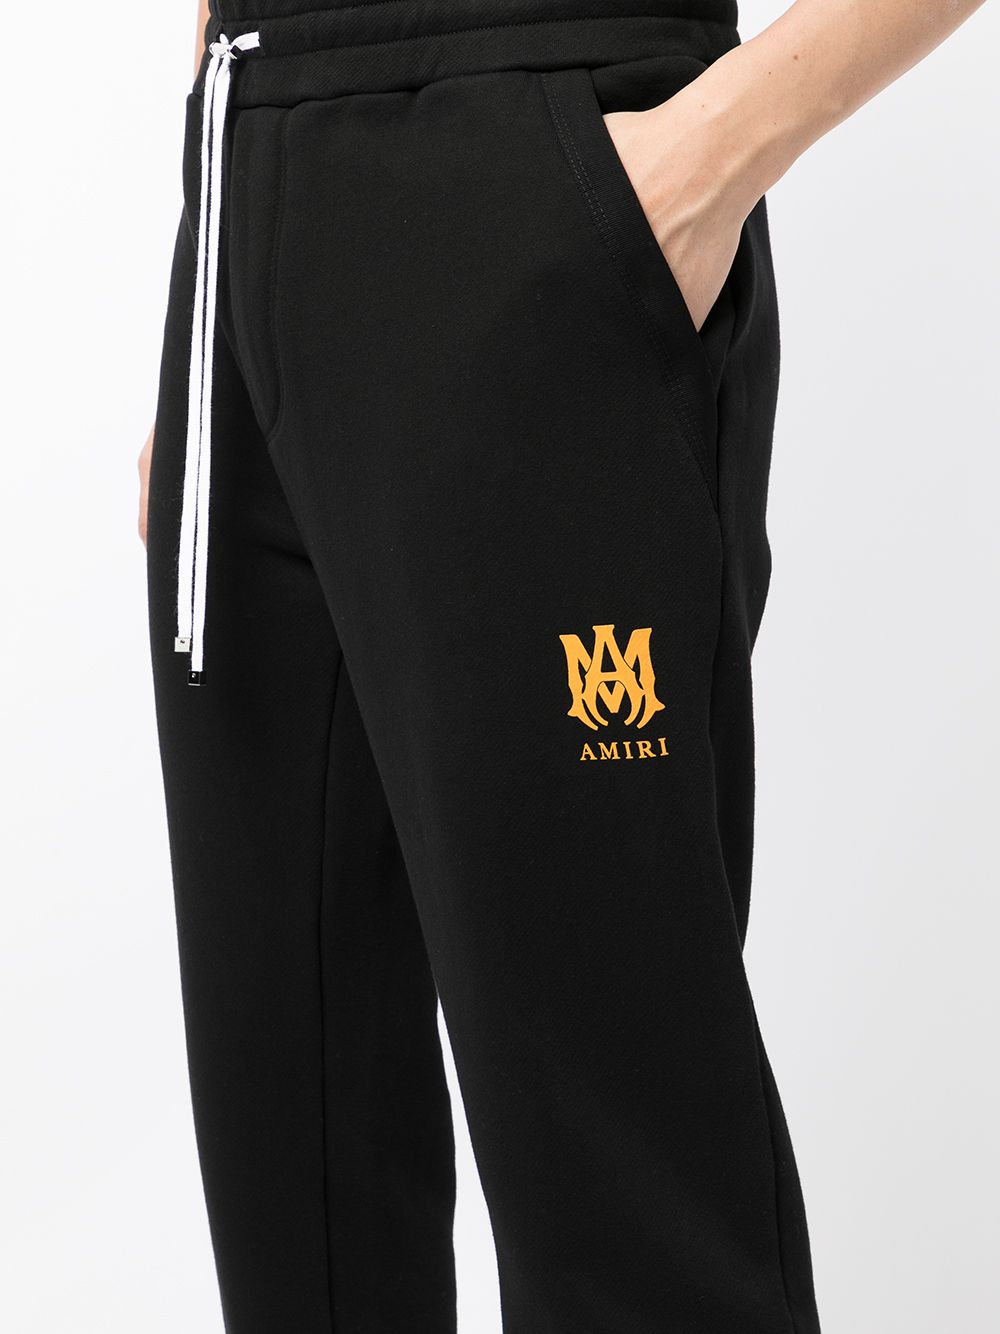 фото Amiri спортивные брюки с вышитым логотипом